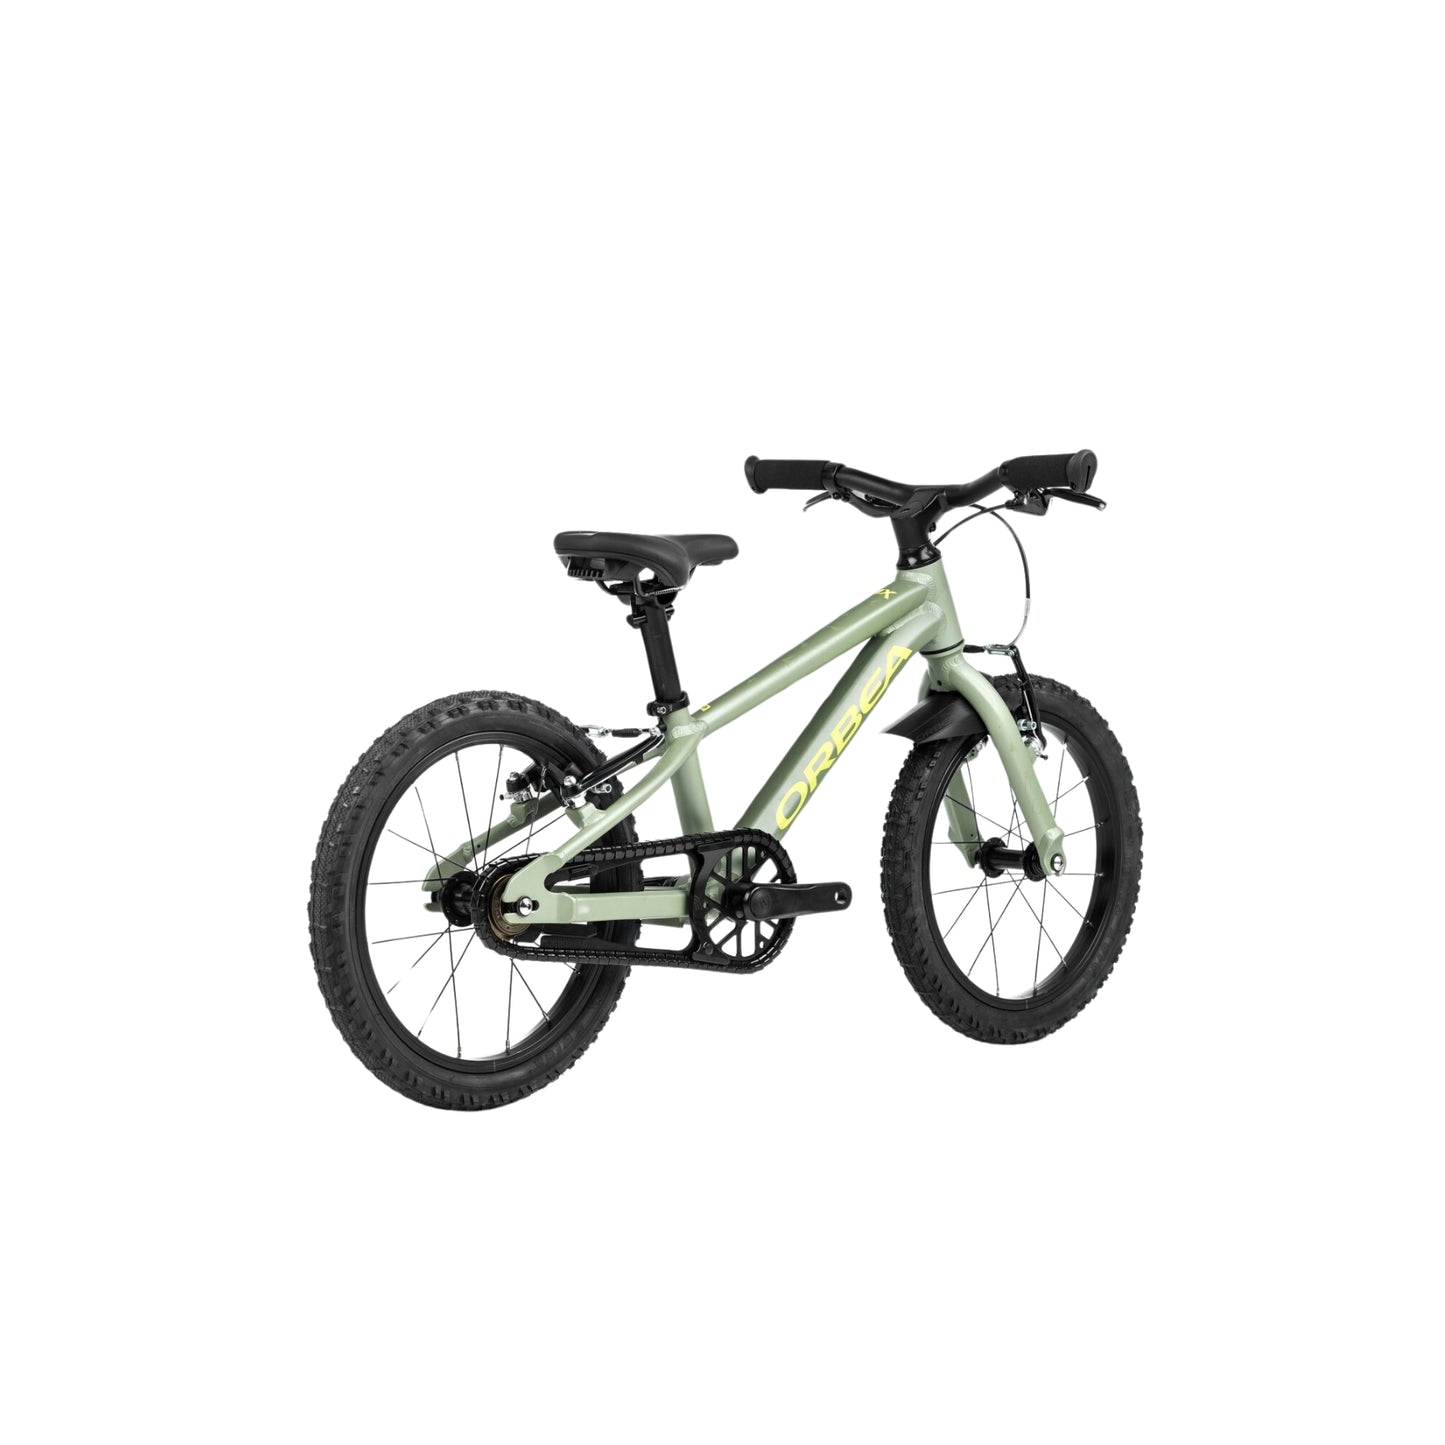 Bicicleta Orbea Mx 16 Metallic Green Artichoke Matt